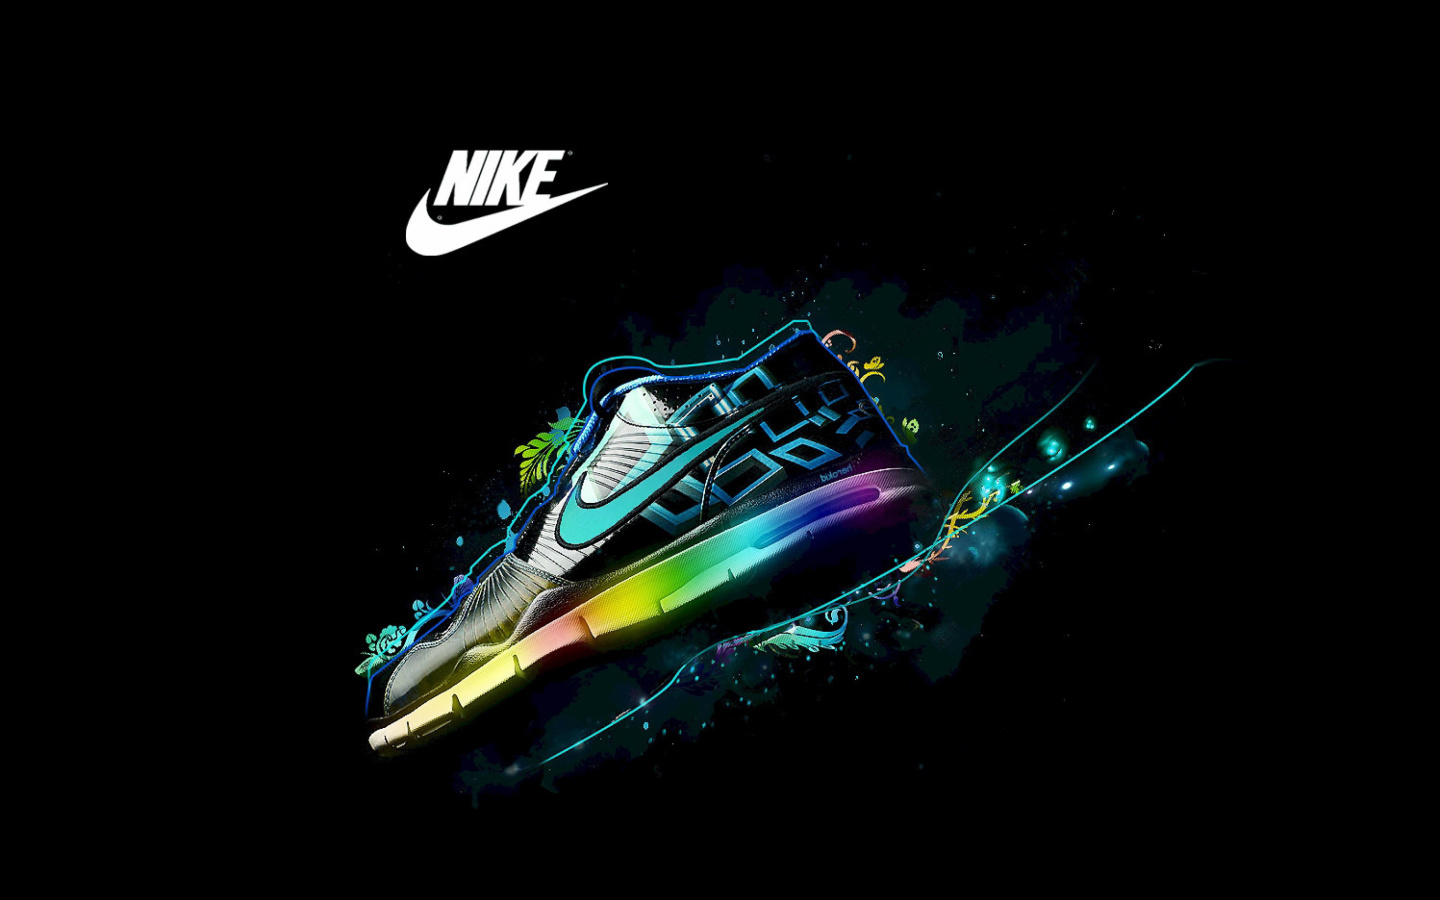 Das Nike Logo and Nike Air Shoes Wallpaper 1440x900